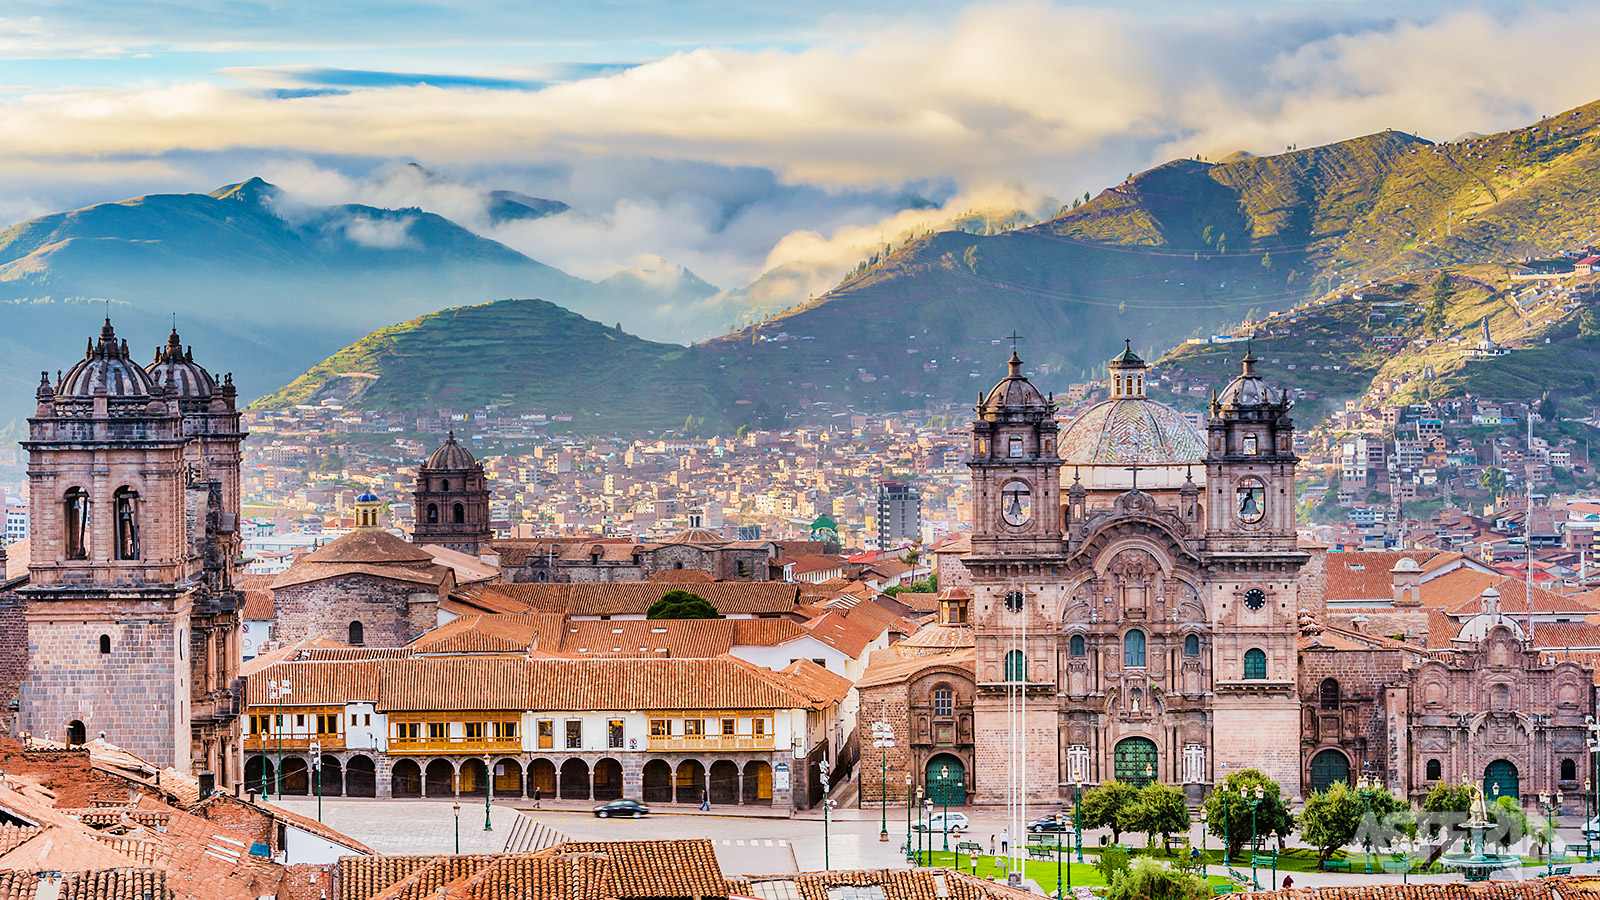 In de bergen van de Andes, temidden van prachtige natuur en eeuwenoude tempels ligt Cusco, het middelpunt van het voormalige Incarijk